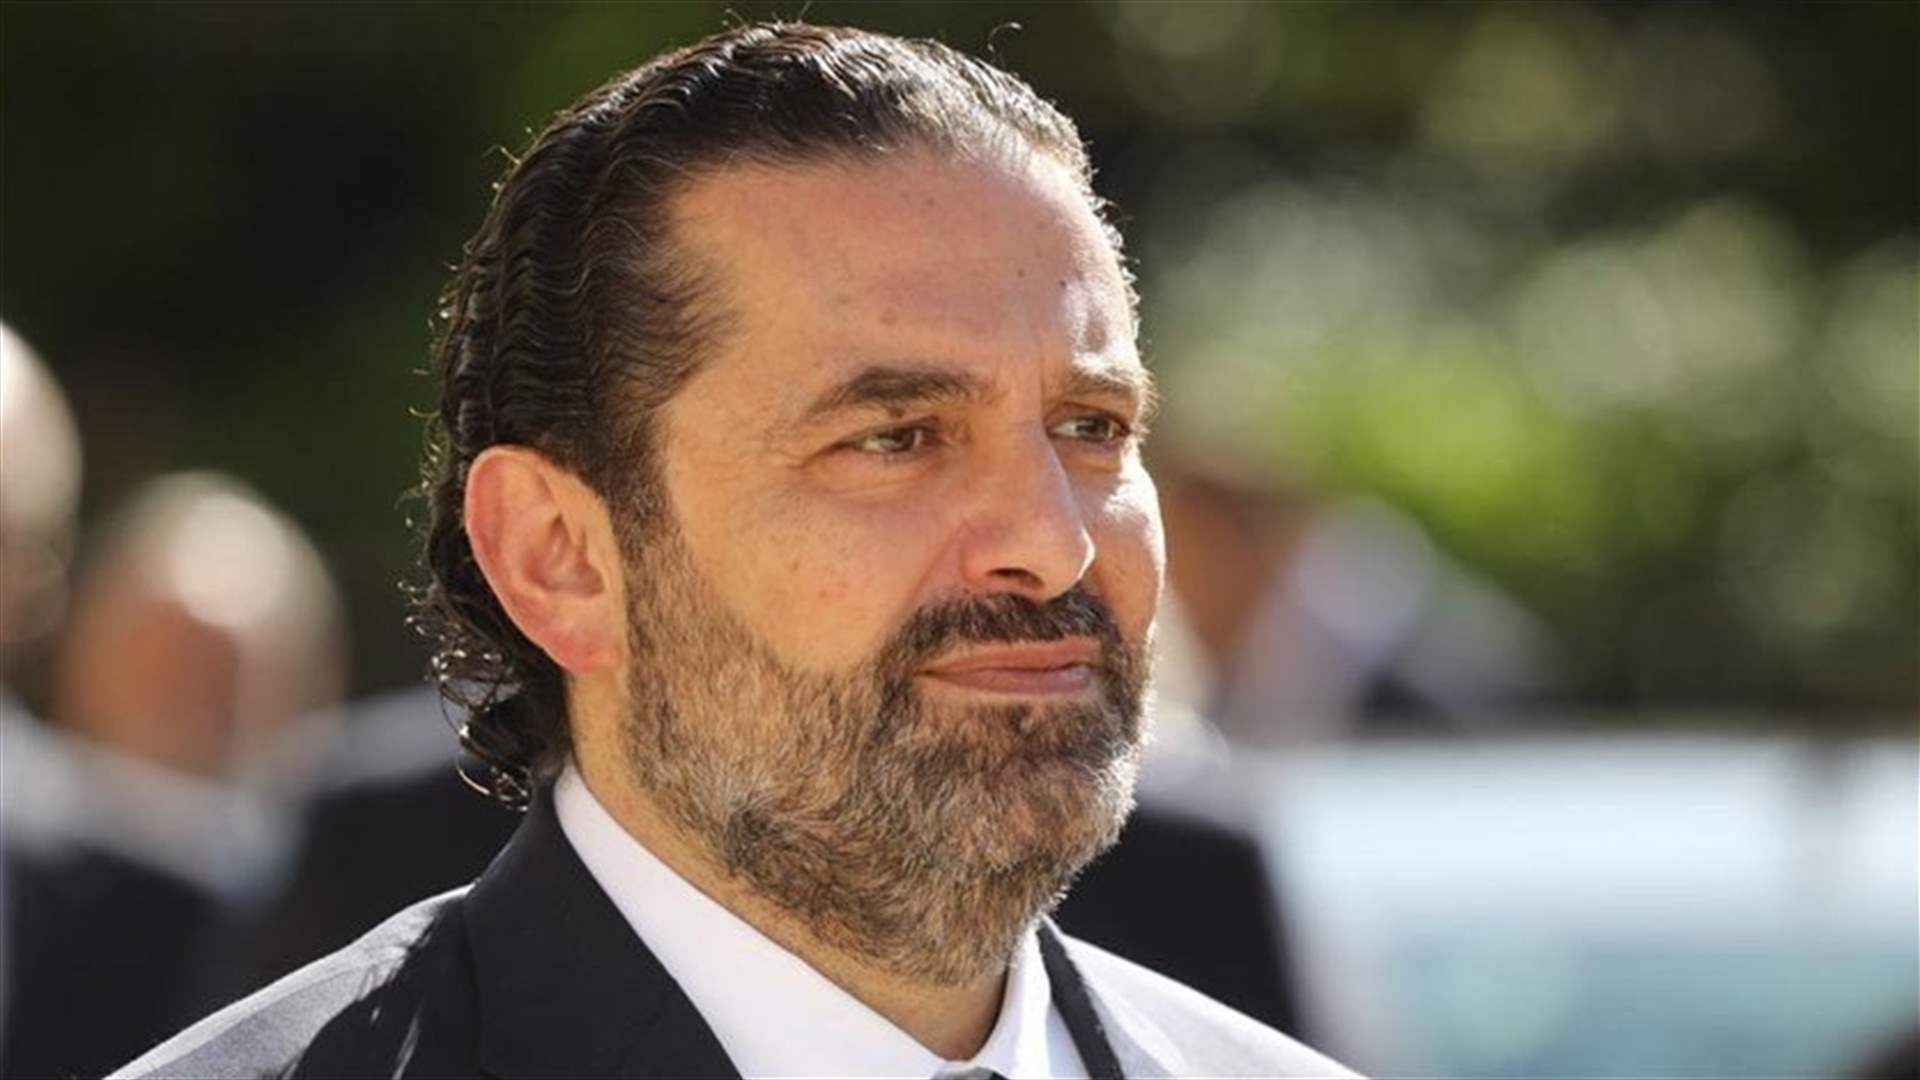 Memorial address: Saad Hariri honors Rafic Hariri&#39;s &#39;vision for Lebanon&#39;